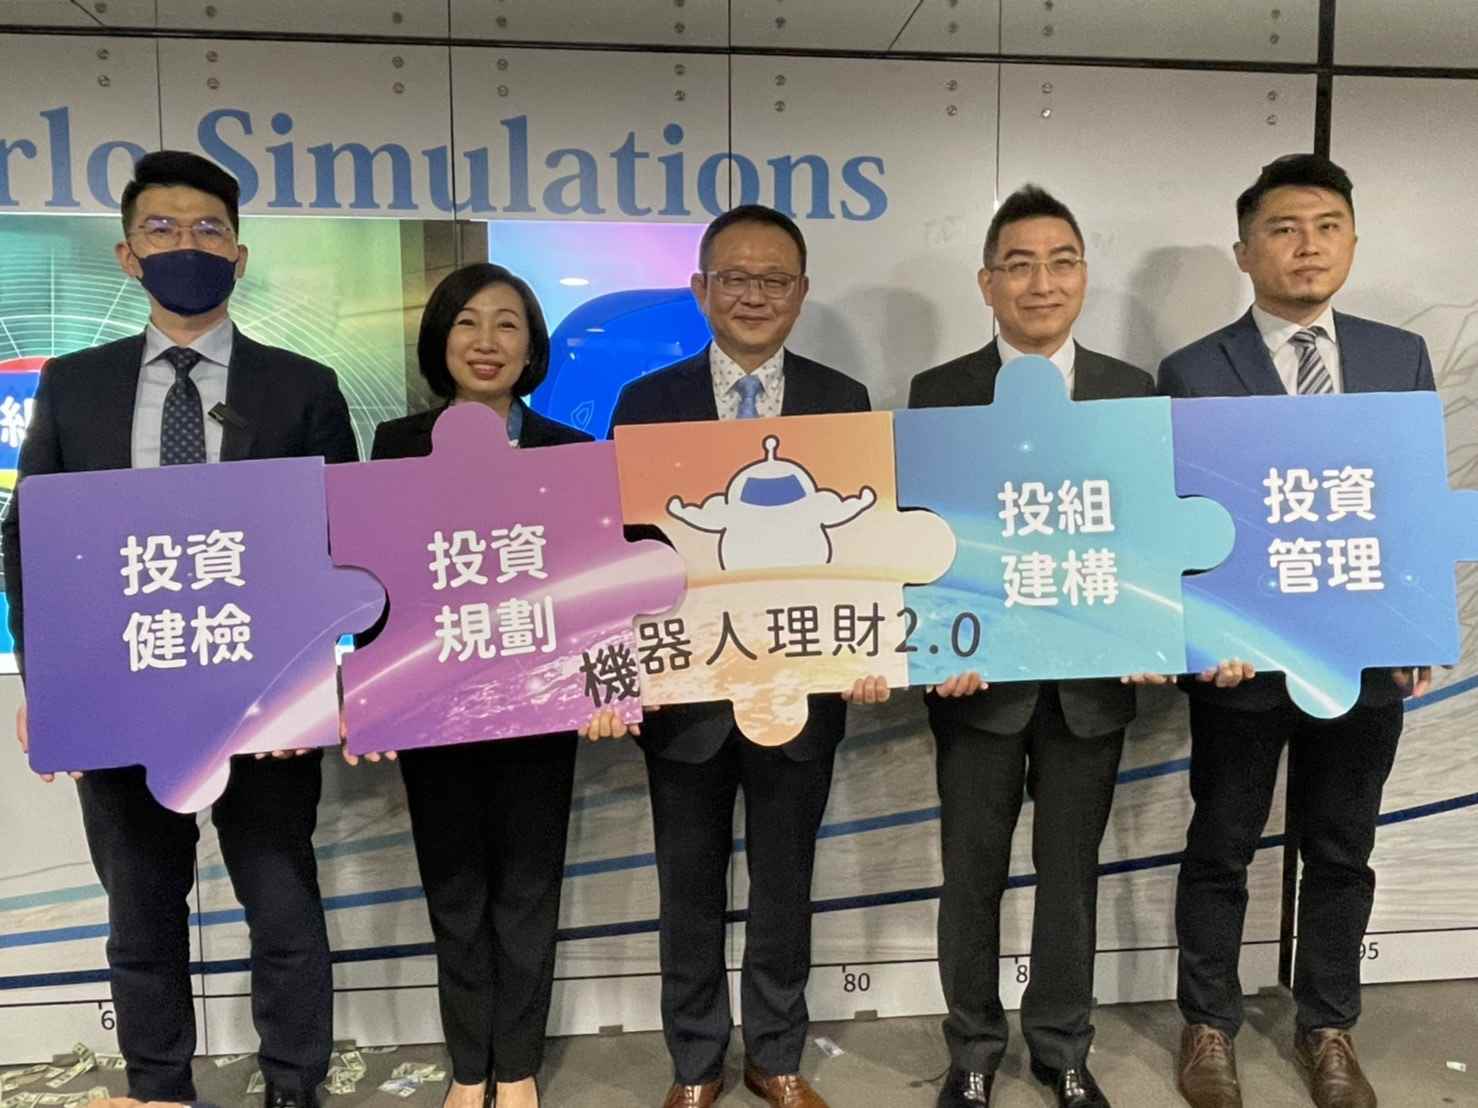 機器人理財化身全方位金錢管家 台灣新創團隊阿爾發再升級